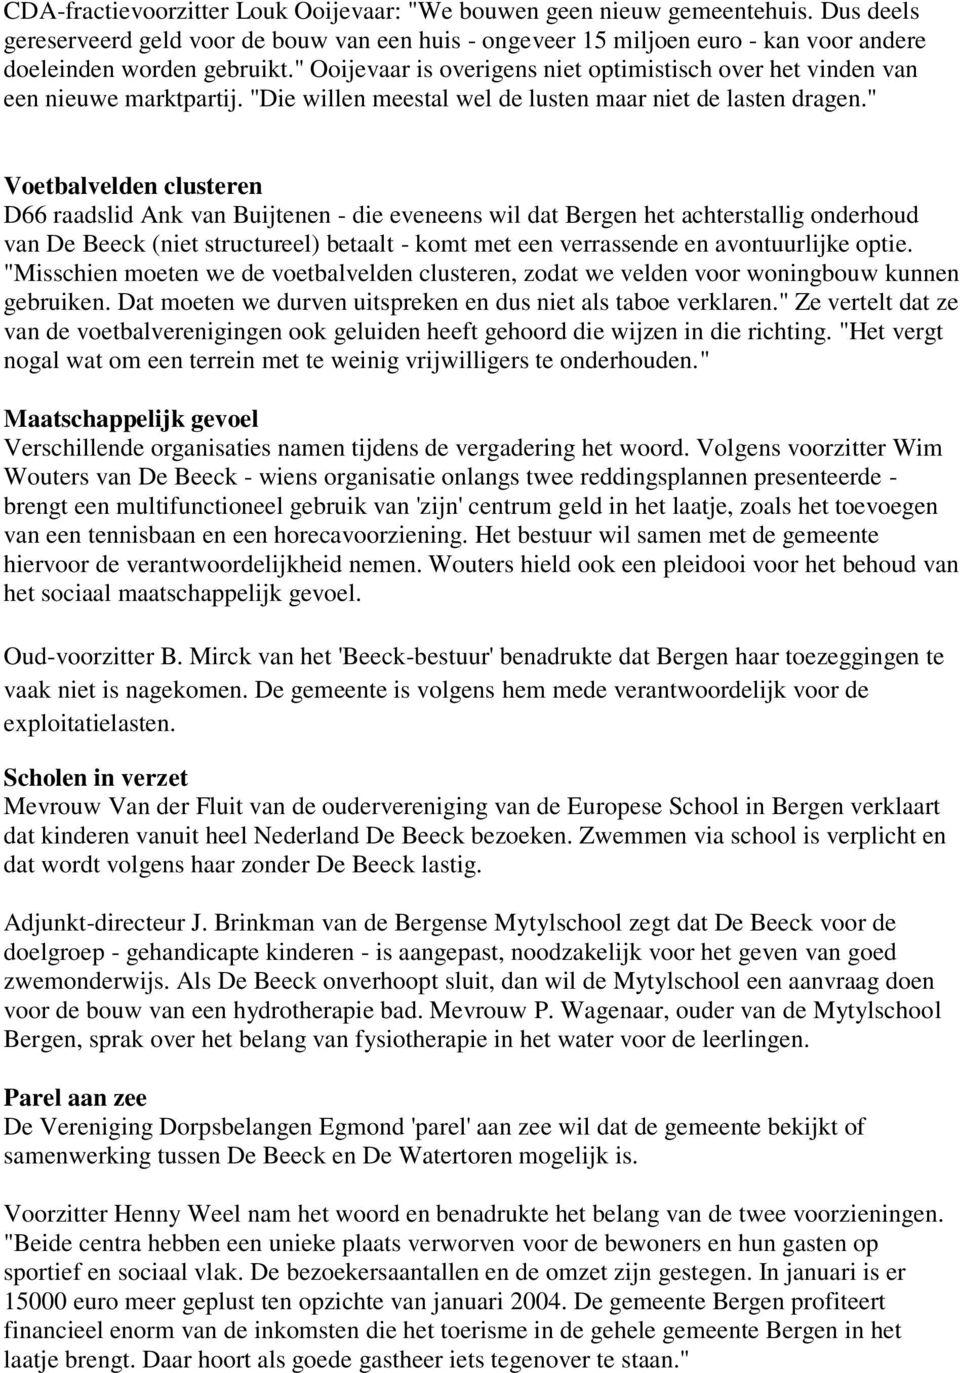 " Voetbalvelden clusteren D66 raadslid Ank van Buijtenen - die eveneens wil dat Bergen het achterstallig onderhoud van De Beeck (niet structureel) betaalt - komt met een verrassende en avontuurlijke